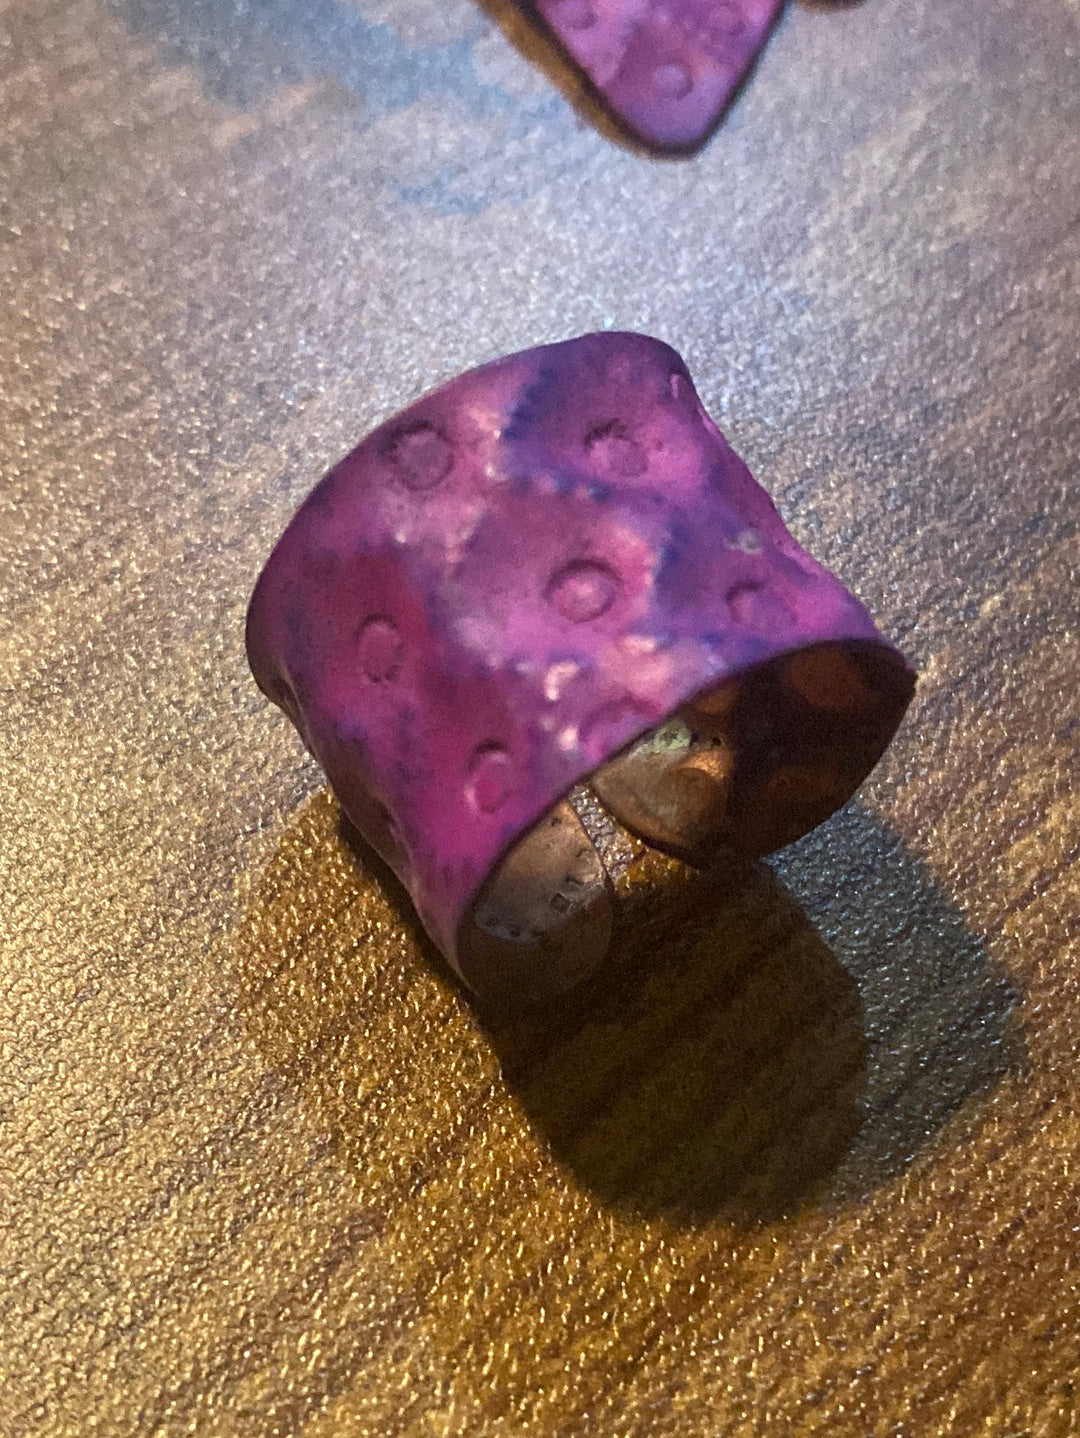 Copper Patina Cuff Bracelet - Diamonds in Purple